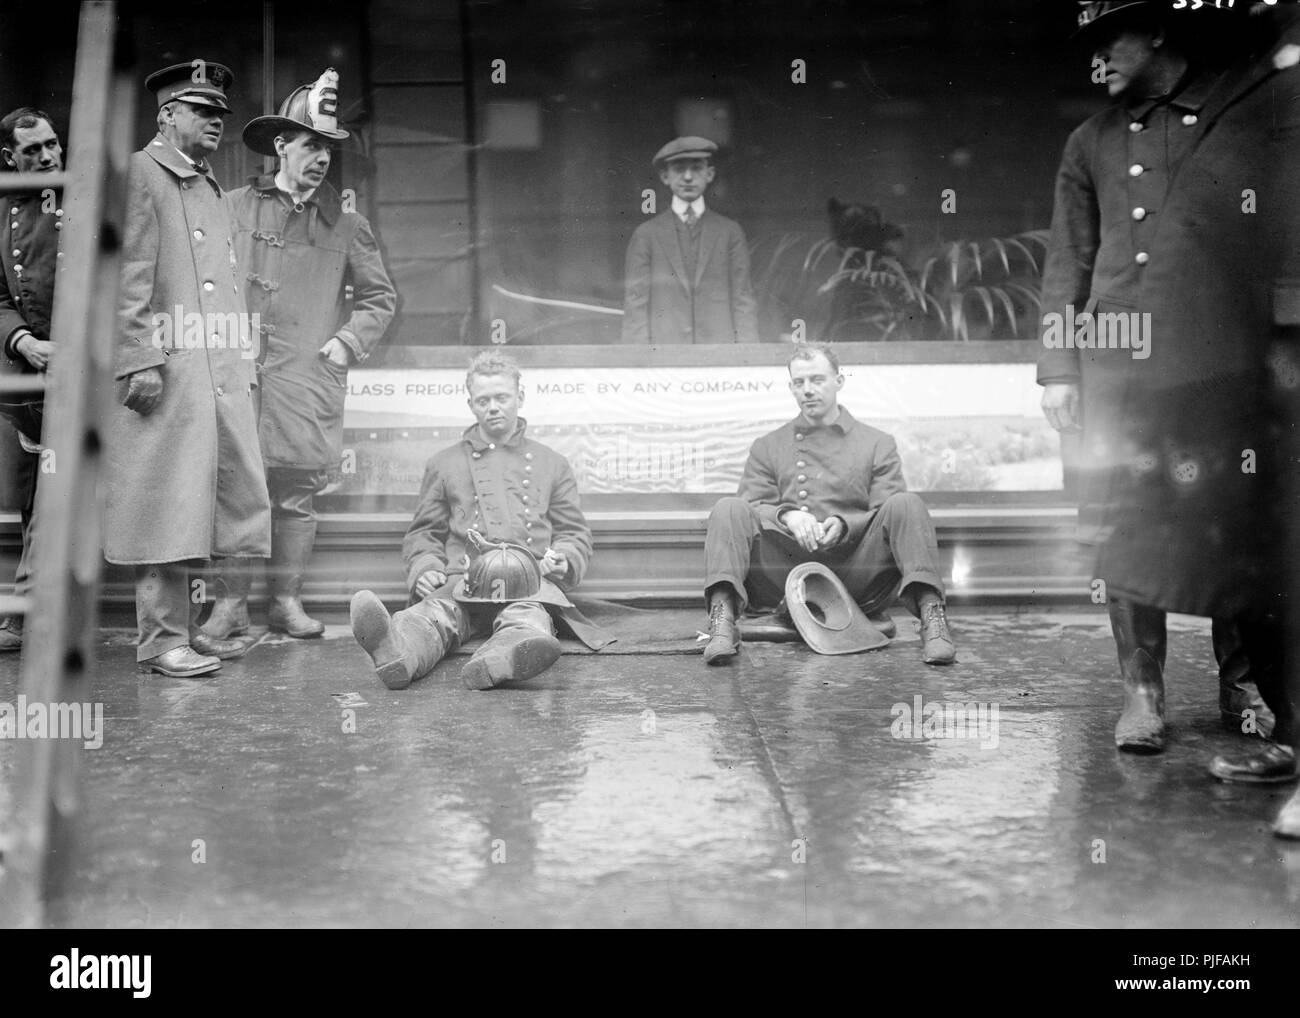 Historisches Bild der Stadt New York Feuerwehrleute nach einer U-Bahn Brand, 1915 Stockfoto